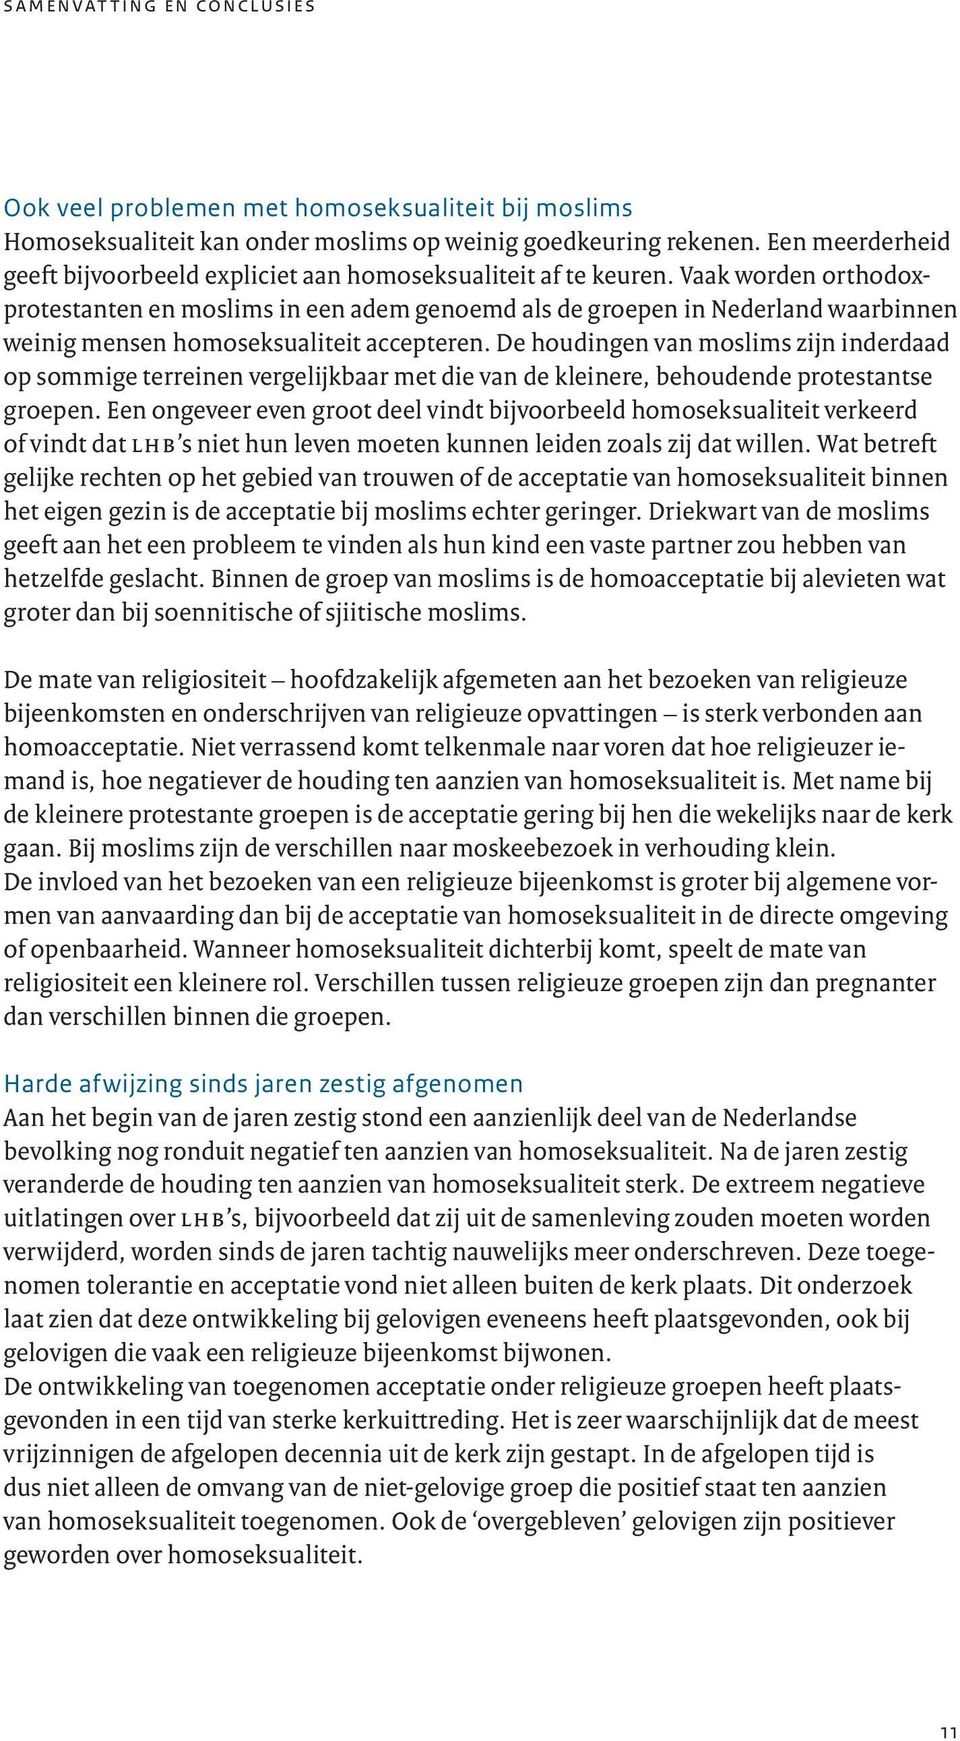 Vaak worden orthodoxprotestanten en moslims in een adem genoemd als de groepen in Nederland waarbinnen weinig mensen homoseksualiteit accepteren.